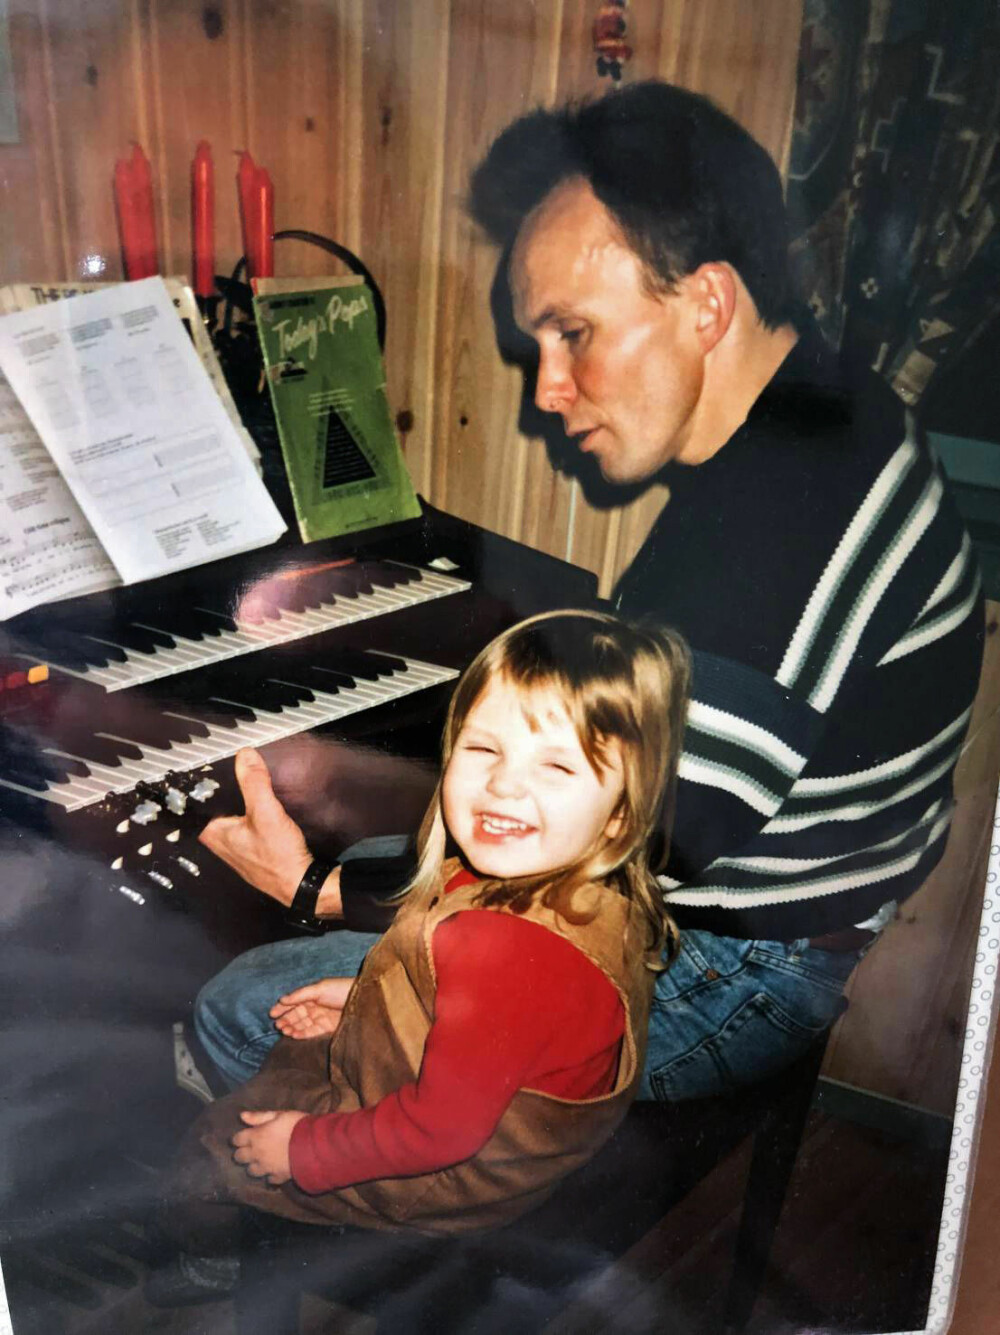 <b>HVORFOR ER DU IKKE GLAD, PAPPA?:</b> Vilde tre år gammel sammen med pappa Odd Werner. Han elsker å spille orgel og trene. Hun forstår ikke hvorfor han ikke gleder seg til jul slik som alle andre.